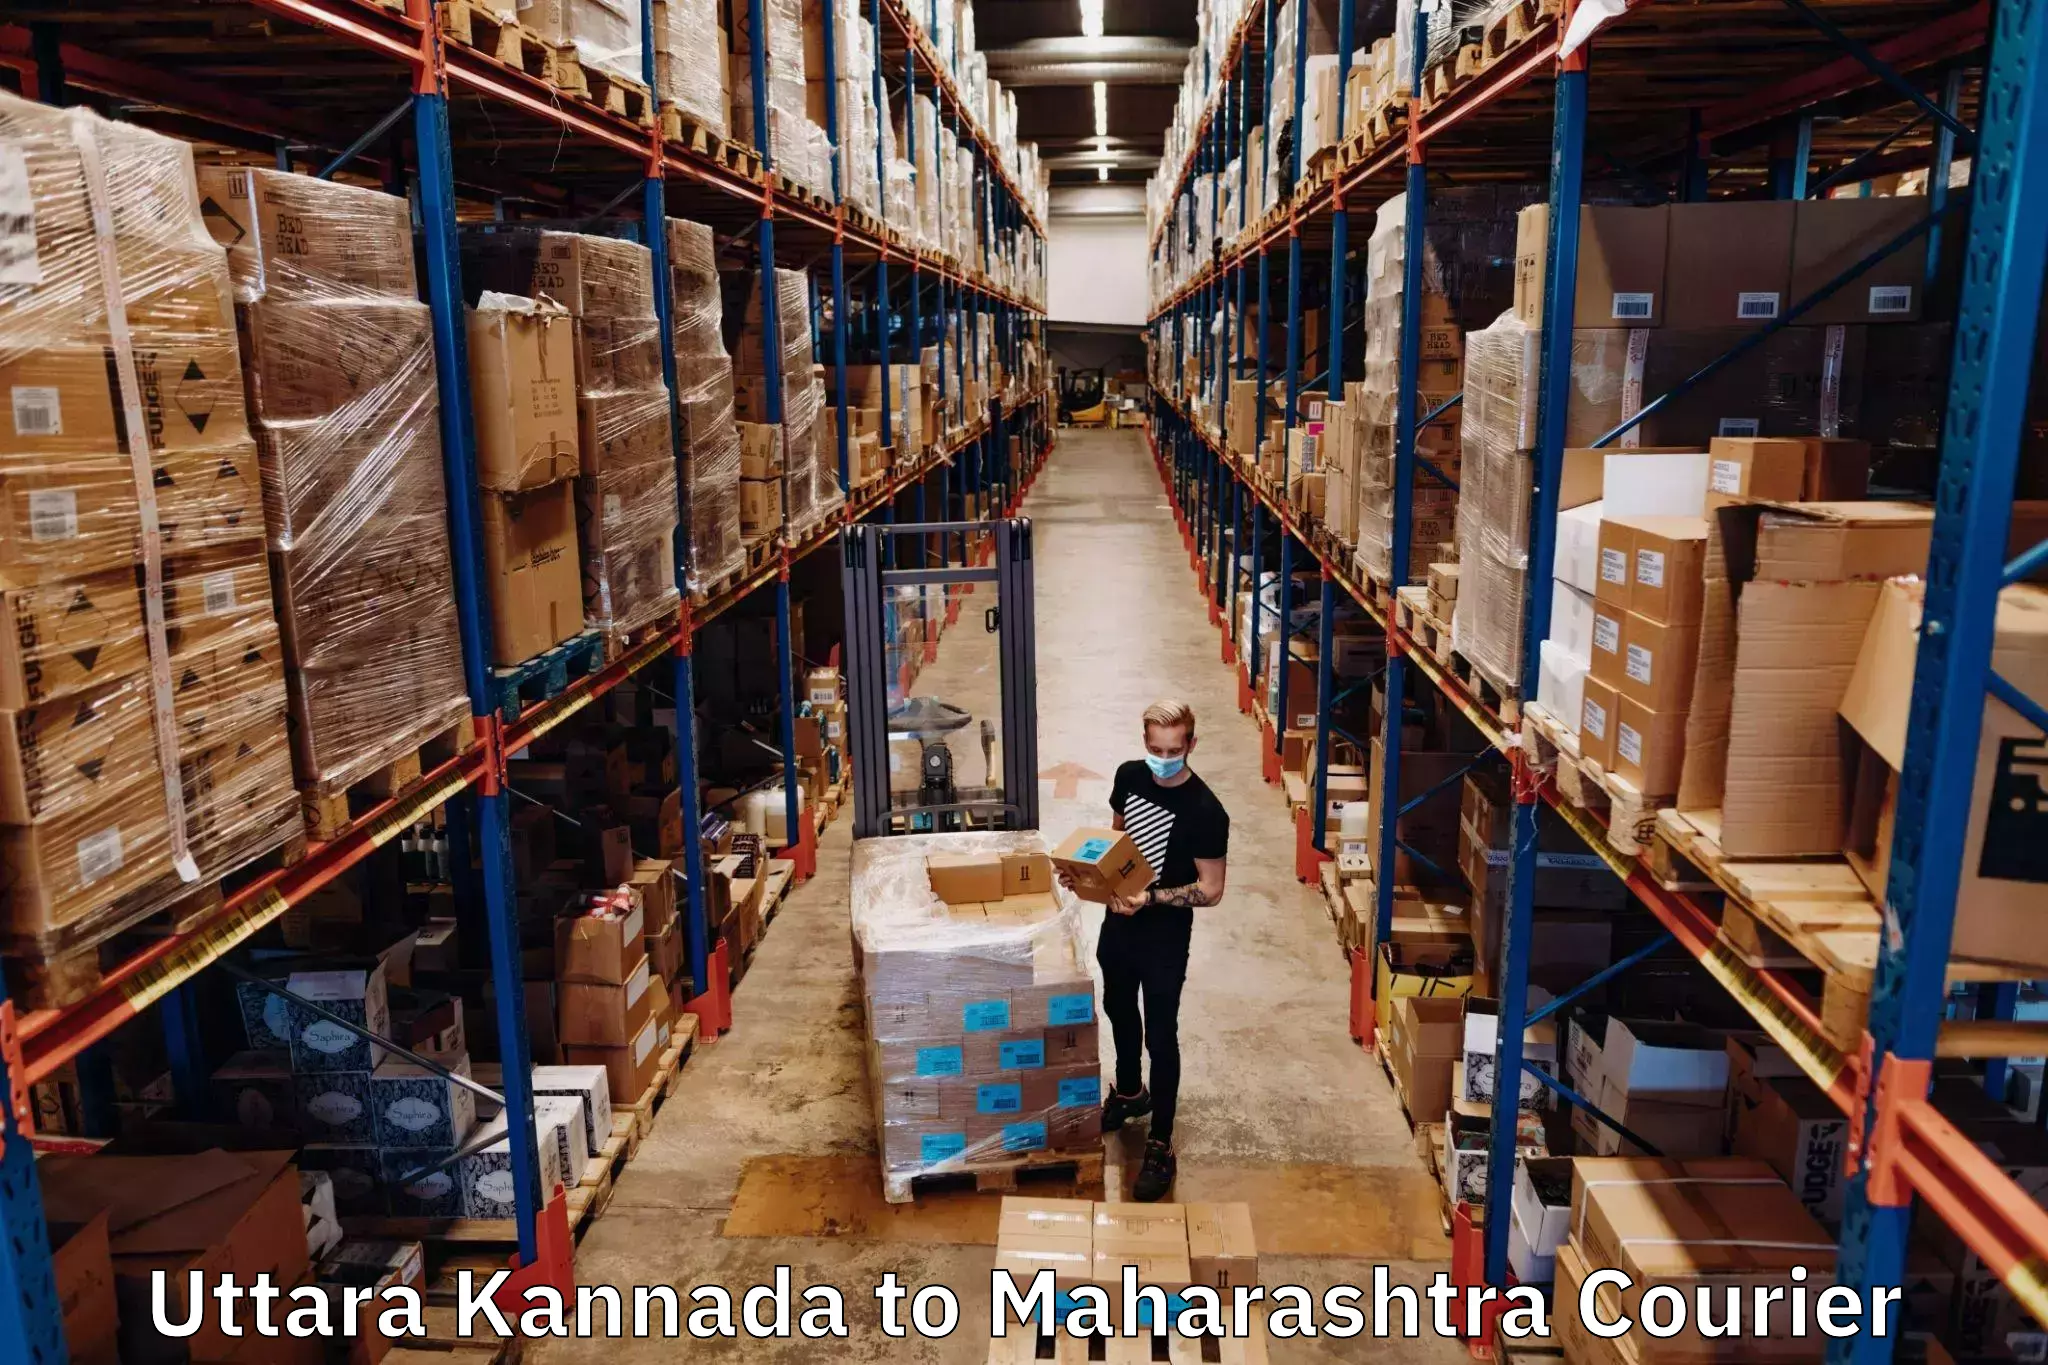 Courier service efficiency Uttara Kannada to Maharashtra